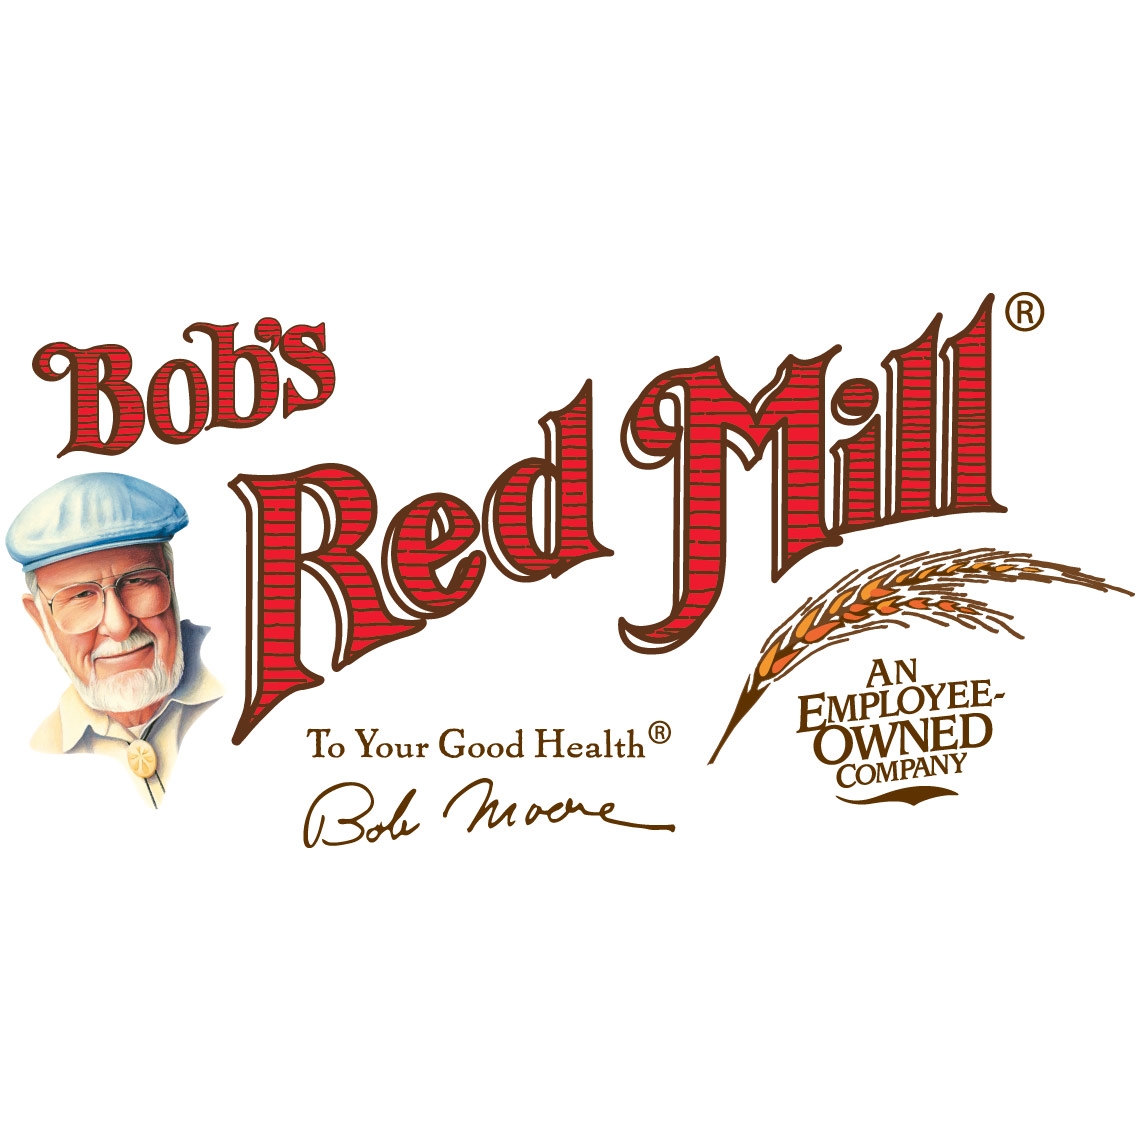 Steel Cut Oats & Oatmeal | Bob's Red Mill